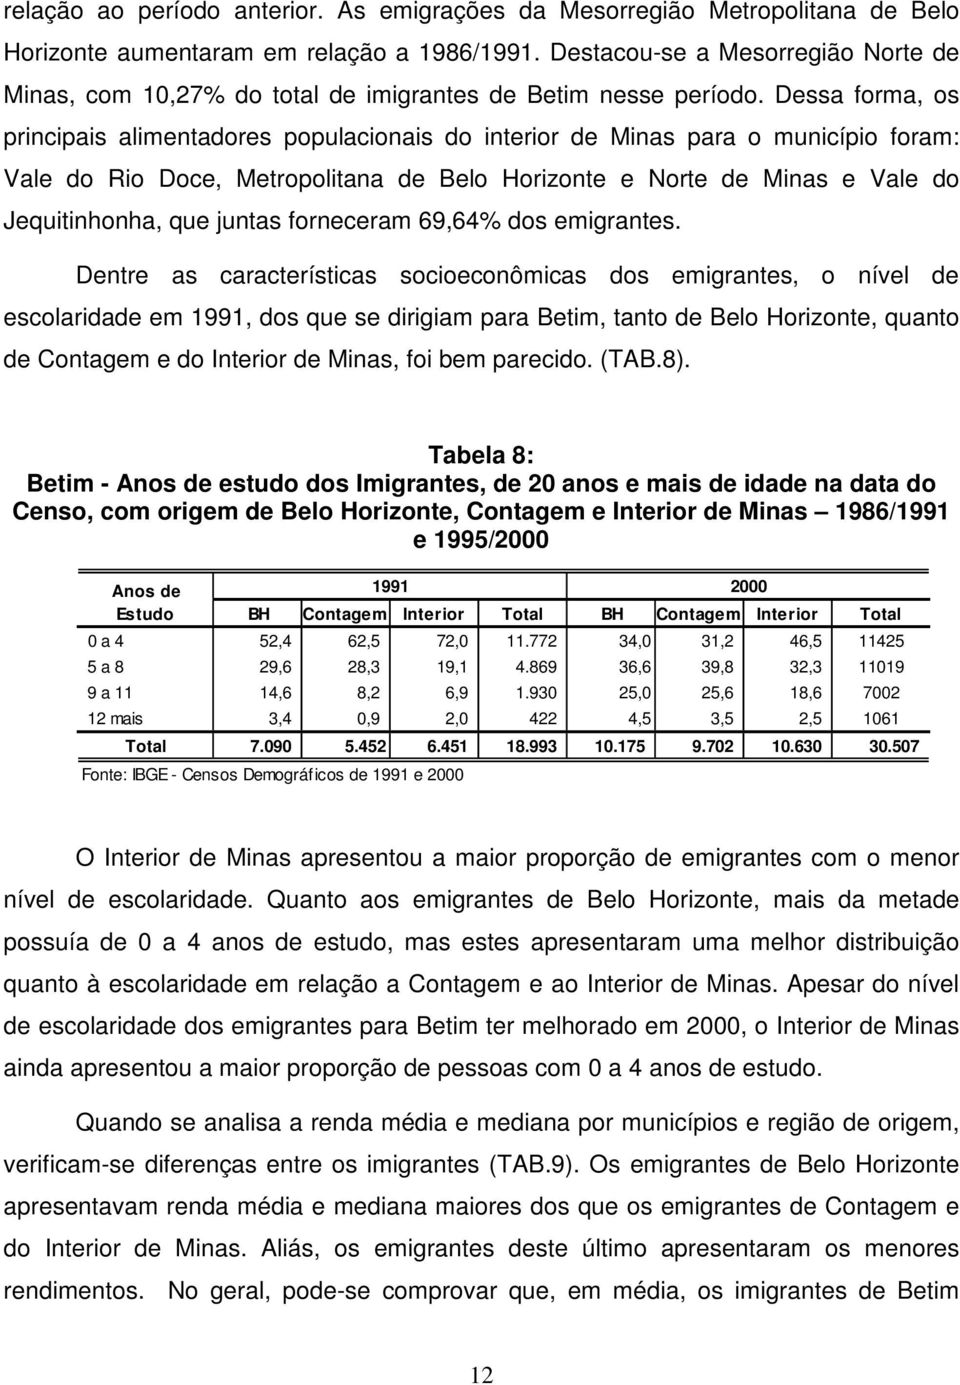 Dessa forma, os principais alimentadores populacionais do interior de Minas para o município foram: Vale do Rio Doce, Metropolitana de Belo Horizonte e Norte de Minas e Vale do Jequitinhonha, que